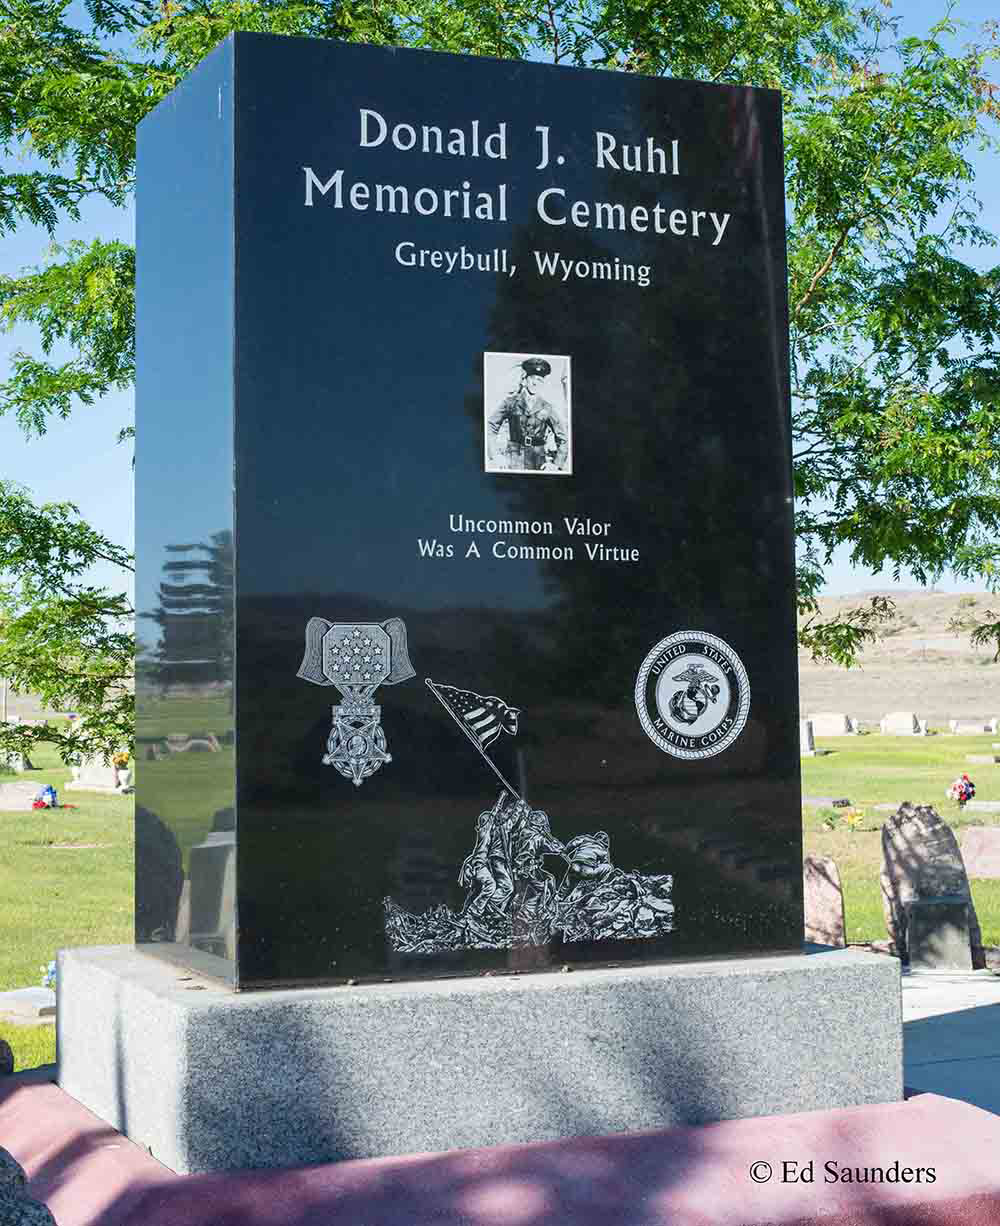 Donald Ruhl Memorial